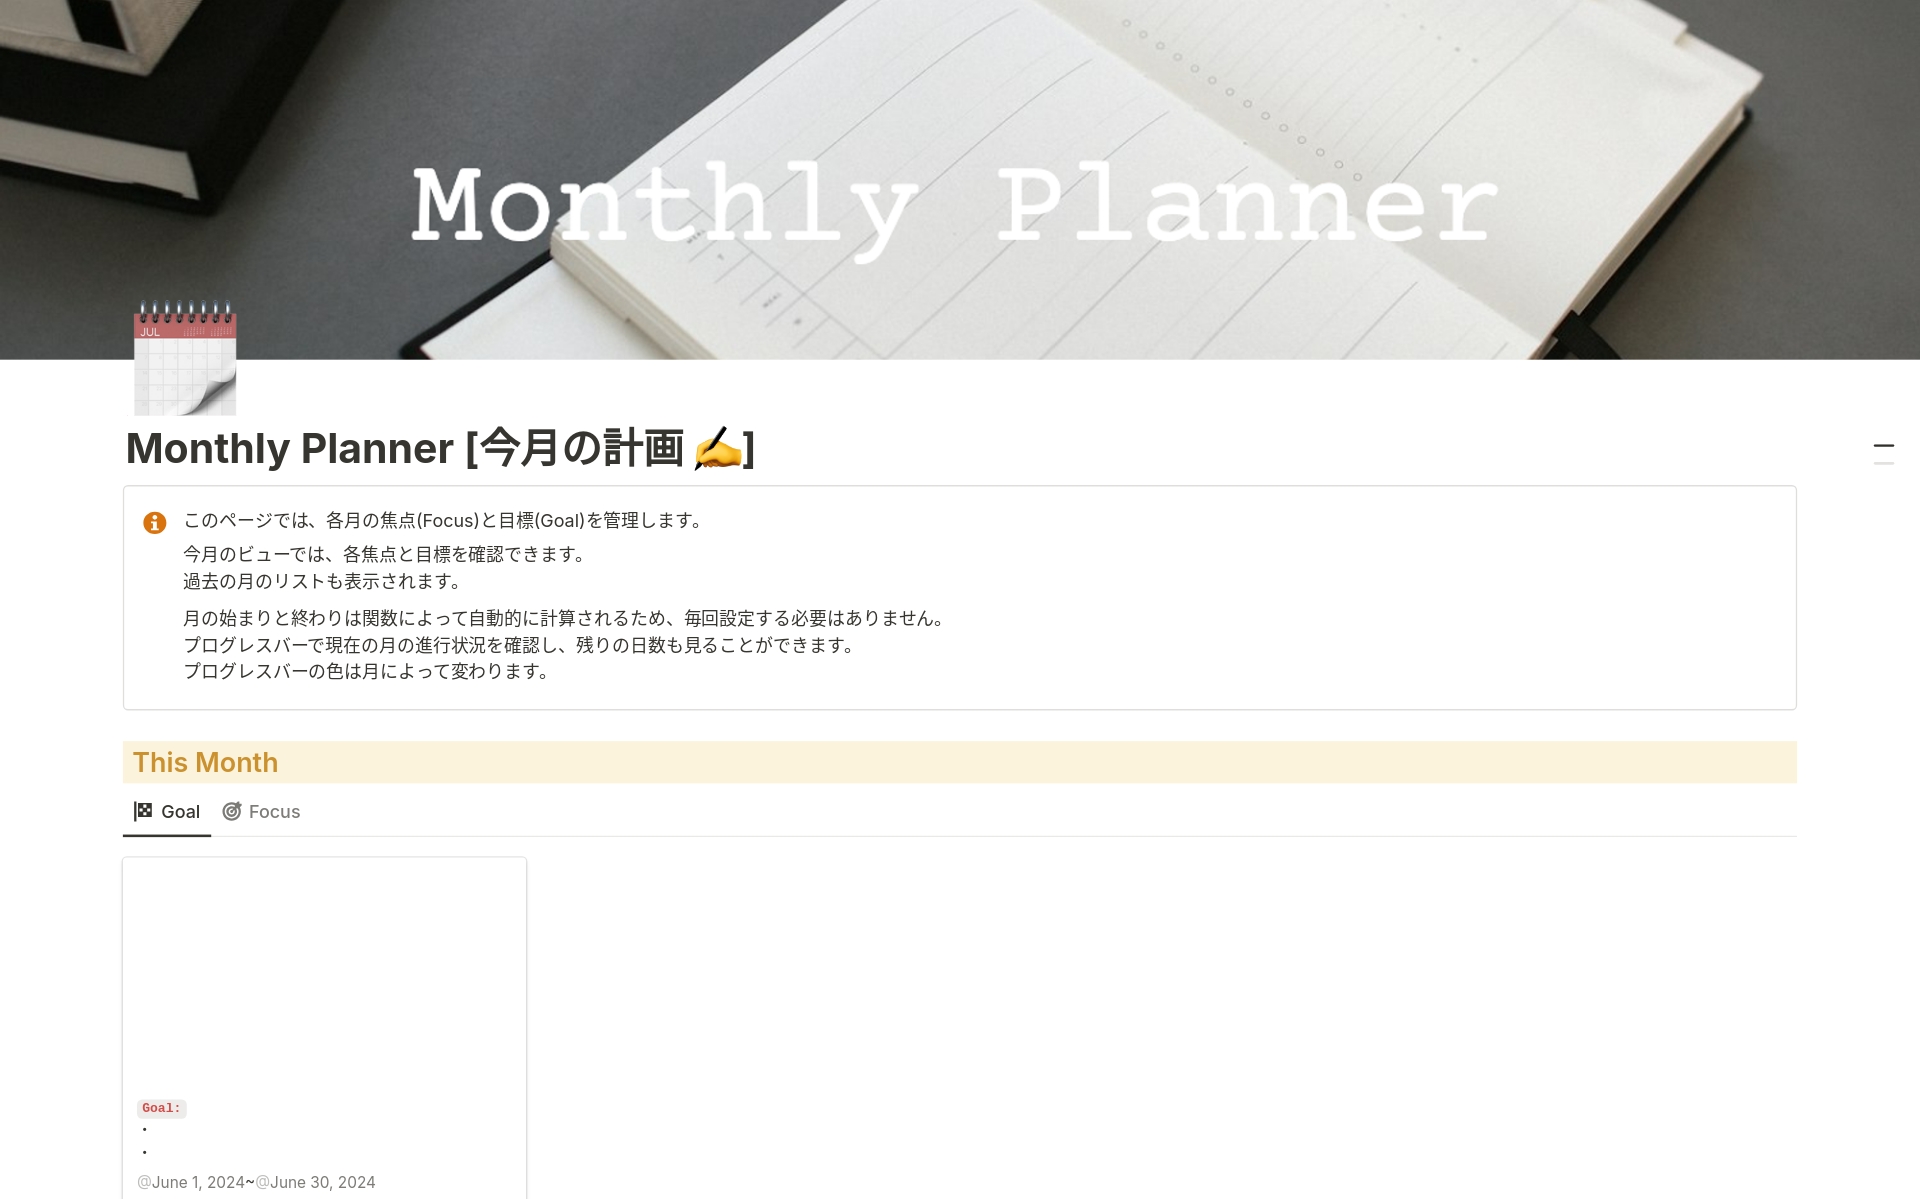 Uma prévia do modelo para Monthly Planner 月間計画